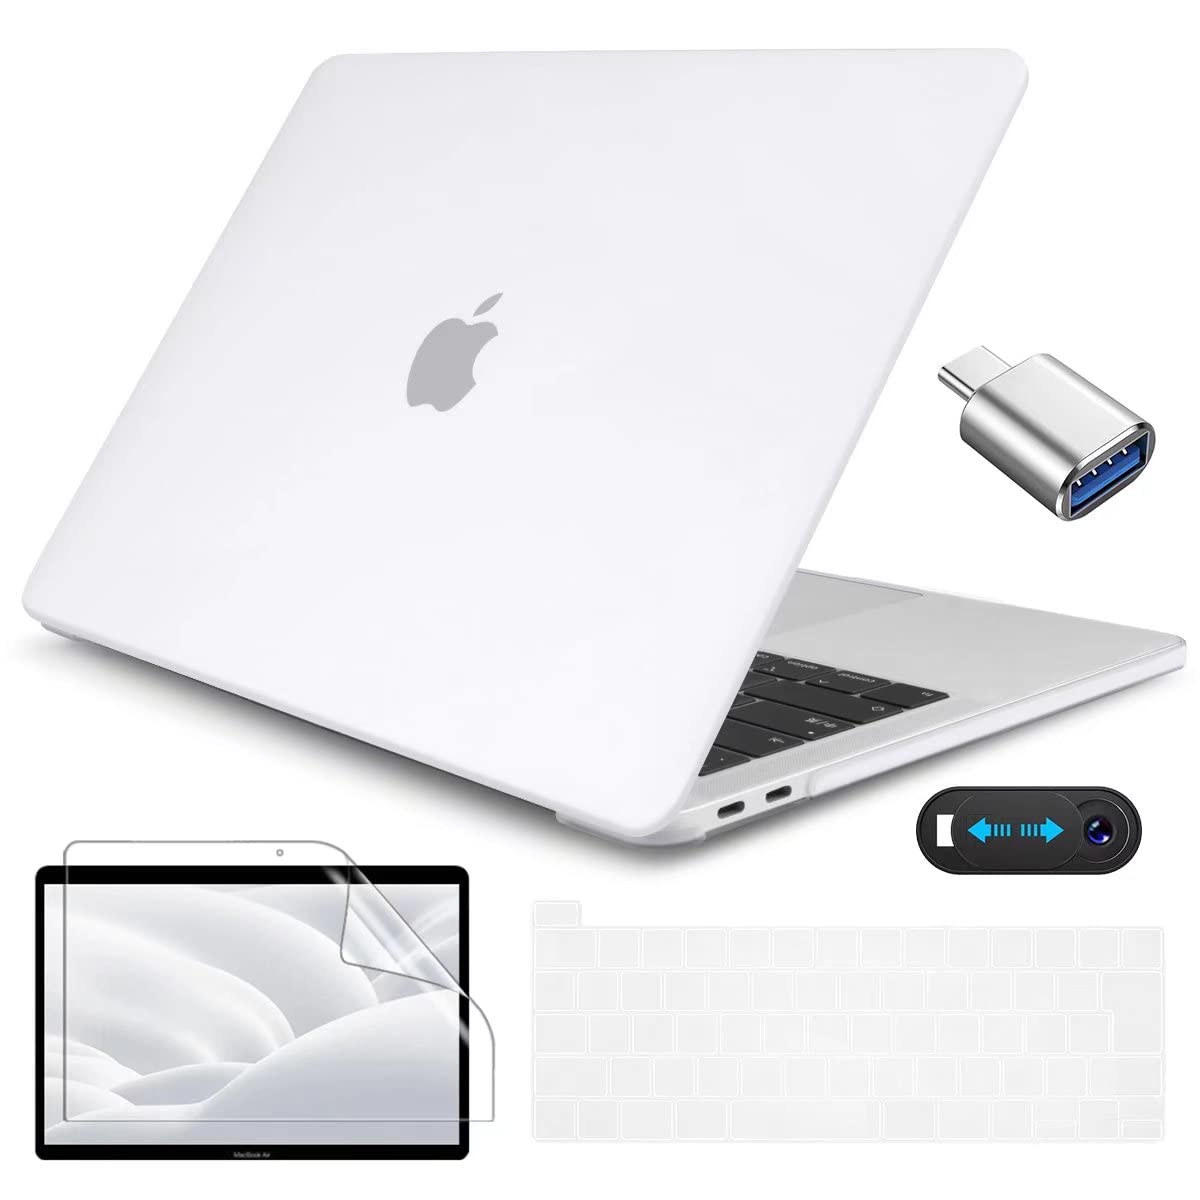 商品情報商品の説明2020-2022年改良新型のMacBook Pro 13インチ ケース pro13シェルカバー+ 画面フィルム+日本語JISキーボードカバー+ Type C to USB 変換アダプタ+ webcam coverの5in1セットです。 ケース対応のパソコンとモデル：2020 2021 for Macbook Air 13inch with Retina Display & & Touch Bar& Touch Id(A2251/A2289/A2338 M1 M2 Chip) ATTENTION:ご注意、ご購入前に、Macbookの後ろのモデル番号「Axxxx」を対照し、ご確認の上にお買い求めください。 ケースについて、Hard Shell Case Features プラスチック製で、触り心地よい同時、優れた保護性があります。アップルのロゴを切り抜きません、完全カバーで、MacBookを傷や汚れから保護します。 シンプルなデザインケース、本来の機能を邪魔しないで、 Macbookカバーをつけたまま各機能をいつもの通り使えます。MacBook の開閉、充電、周辺機器の接続に可能、とても便利です。 A2338/A2251/A2289通用の日本語JIS配列キーボードカバー USキーボードと違って、日本語キーボードカバー専用に設計されJIS配列キーボードカバーです。（Japanese layout keyboard cover,Not US layout,please notice it）。高級の無毒シリコーン素材を採用し、キズがつきにくいし、滑りにくいし、耐久性があります。 キーボードをほこり、キーの磨耗、汚れ、水などから完全に保護します。汚れた場合は中性洗剤で何度でも洗うことができます。再利用可能です。 画面フィルム、保護スクリーンプロテクター Screen protector付き。 極薄、厚さがわずか0.1mmのスクリーン用保護フィルムです 。貼りやすく剥がれにくいシートです、シートを剥がしても糊が残りません。 フィルムの貼り方：おMacBookのScreen部分を清潔して、フィルムの端から剥離フィルムを剥がし、端から気泡を押し出すように貼ってください。ご注意：フィルムを剥がす時はゆっくり剥してください。 Type C to USB 変換アダプタ(USB C to USB adapter)付きます。 ウェブカメラカバー webcam cover付きます。 おMacBook Pro 13のウェブカメラを隠ぺし、プライバシー保護し、パソコンを自由に使います。コンパクト、ちょうどいいのサイズで、ピッタリと合いました。極薄、貼る前と後でMacBookなどの操作性に邪魔もなく、良い使用感と保護性があります。 【商品保証】 商品保証について、CISSOOK製品はご購入日から12ヶ月間の保証がございます。商品の品質には万全を期しておりますが、万が一製品に何らかの問題がございましたら、こちらのアフターサービスに連絡してください。迅速に対応させていただきます。主な仕様 ●ケースの対応機種:2020 2021 2022 2023 年発売の新型MacBook Pro 13 インチ M2 A2338 M1 A2251 A2289 モデル。ご注意：他のパソコン型番に適用しません。お手数ですが、ご購入前に、必ずおMacBook　Proの後ろのモデル番号「Axxxx」を対照し、ご確認の上にお買い求めください。br●【優れた材料・底部カバー排熱設計・4個ゴム足】For MacBook Pro 13 カバーの仕様。材質：プラスチック サイズ: 30*21.6*1cm　重量：230g アップルのロゴ部分を切り抜きません、完全カバーで、MacBookを傷や汚れから保護します。底部カバー4つの外れにくいのゴム足があり、テーブルとの摩擦を増強し、外れに滑りにくい。br●A2338 M1 M2 チップ/A2251/A2289通用の日本語JIS配列キーボードカバー。Attention:Japanese layout keyboard cover,Not US layout,please notice it.品質なシリコン製キーボードカバーです。柔軟性があり、丈夫、軽量、防水機能もあり、汚れている場合は、洗濯して繰り返し使用可能。超薄型、タッチ感が良い、タイピング感も快適です。br●Type C & USB 変換アダプタ(Type-C/USB C to USD adapter)+ウェブカメラカバー webcam cover付き。Type-C&USBアダプターは使用便利です。Webcam coverはおMacBook Proのウェブカメラを隠ぺし、プライバシー保護し、パソコンを自由に使います。コンパクト、ちょうどいいのサイズで、ピッタリと合いました。極薄、貼る前と後でMacBookなどの操作性に邪魔もなく、良い使用感と保護性があります。br●【お得な5in1セット】ハードケース(Hard Shell Case) +画面フィルム(Screen Protector)+日本語 JIS キーボードカバー(Japanese Keyboard cover)+Type C & USB 変換アダプタ(Type-C/USB C to USD adapter)+ウェブカメラカバー (webcam cover)のセットです。CISSOOK商品は信頼的な一年保証で、もし何か問題がございましたら、どうぞご遠慮なく、お問い合わせください。弊社は迅速に対応させていただきます。